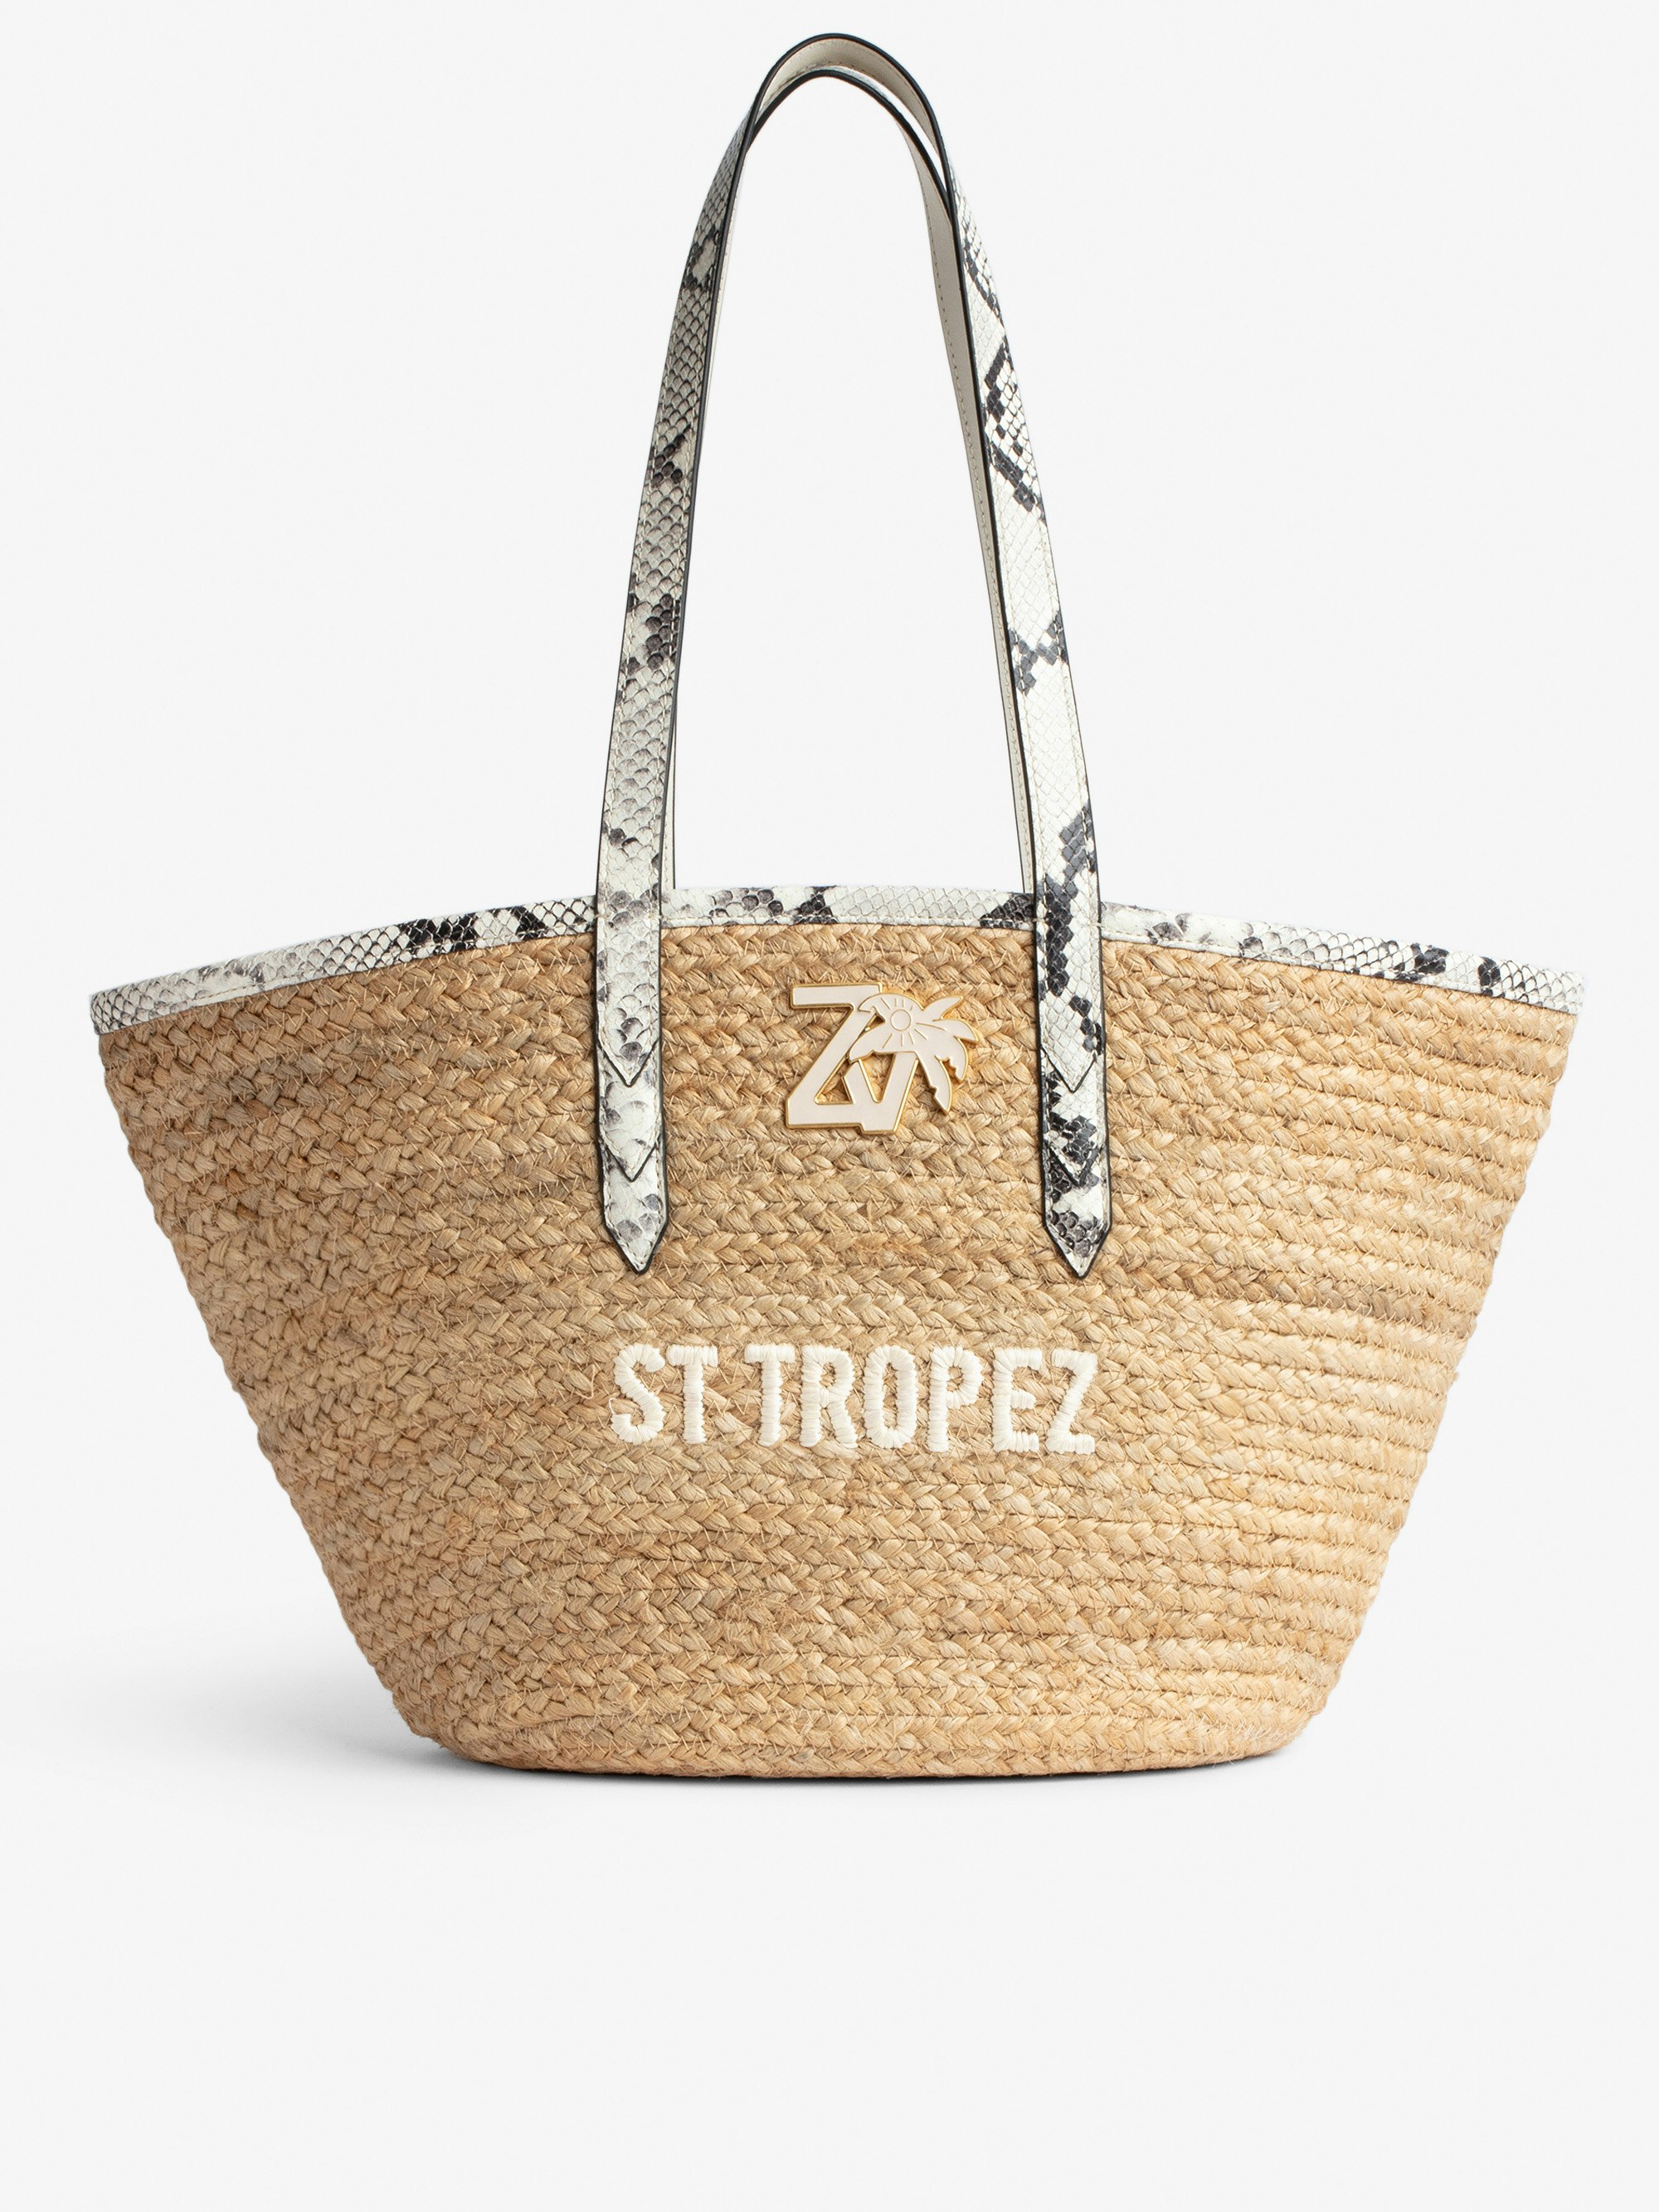 Sac Le Beach Bag - Sac en paille à anses en cuir écru effet python, brodé "St Tropez" et orné d'un charm ZV.